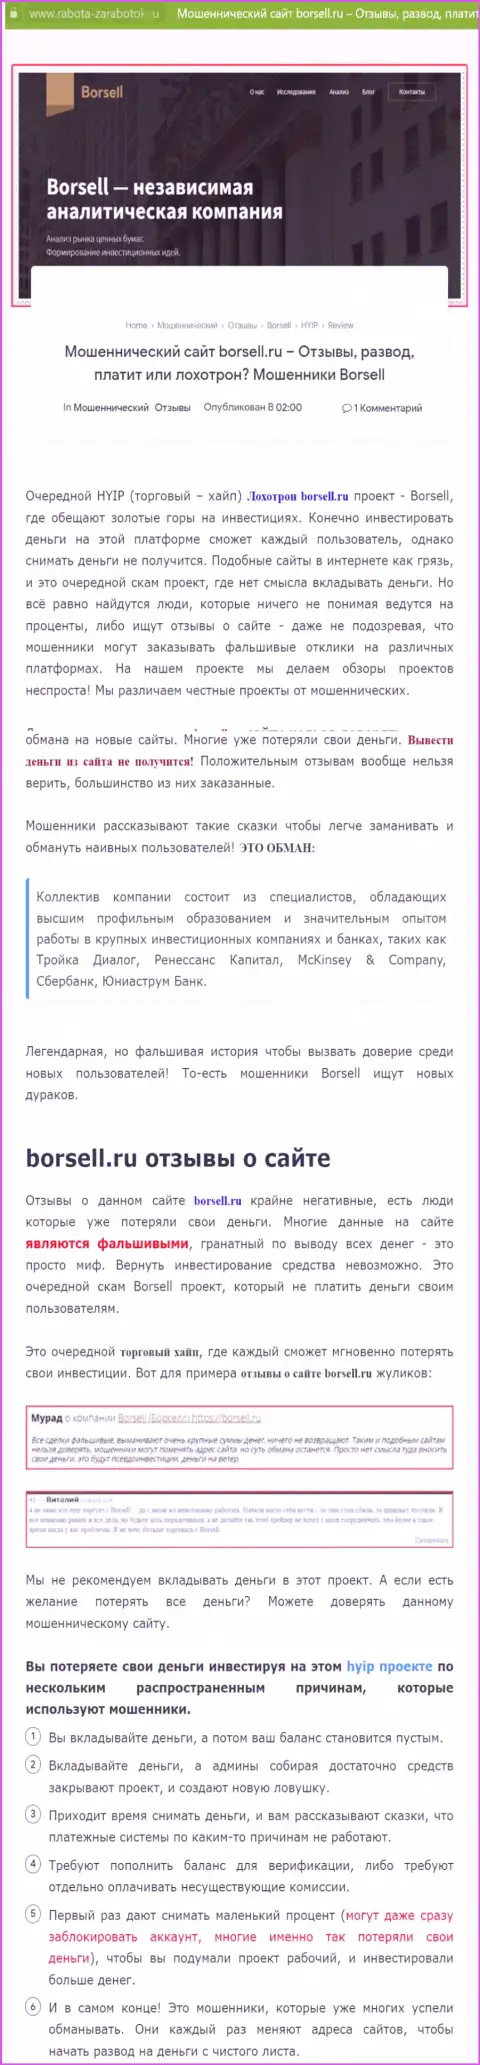 Внимательно посмотрите предложения совместной работы Borsell Ru, в компании разводят (обзор мошеннических деяний)